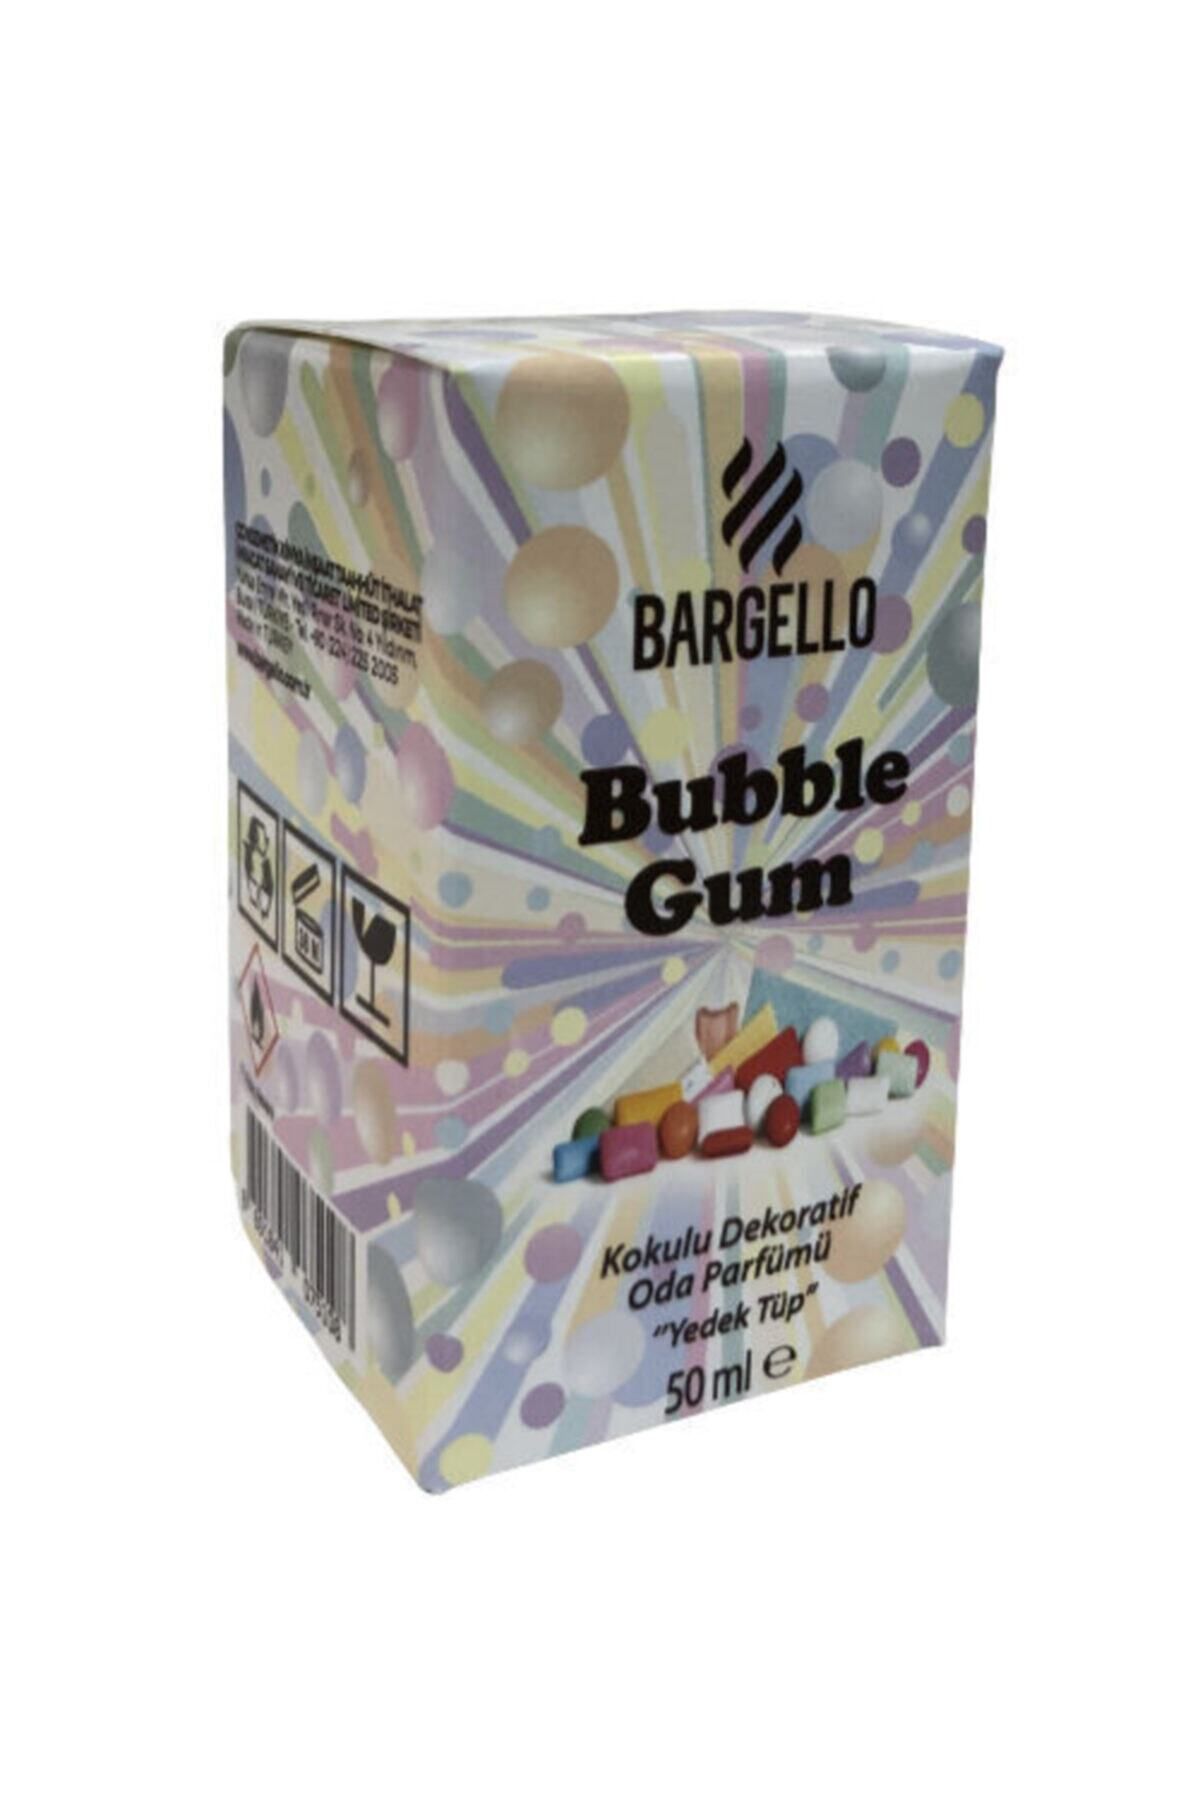 Bargello Sakız Bubble Gum Dekoratif Oda Kokusu Yedek Tüp 50 Ml